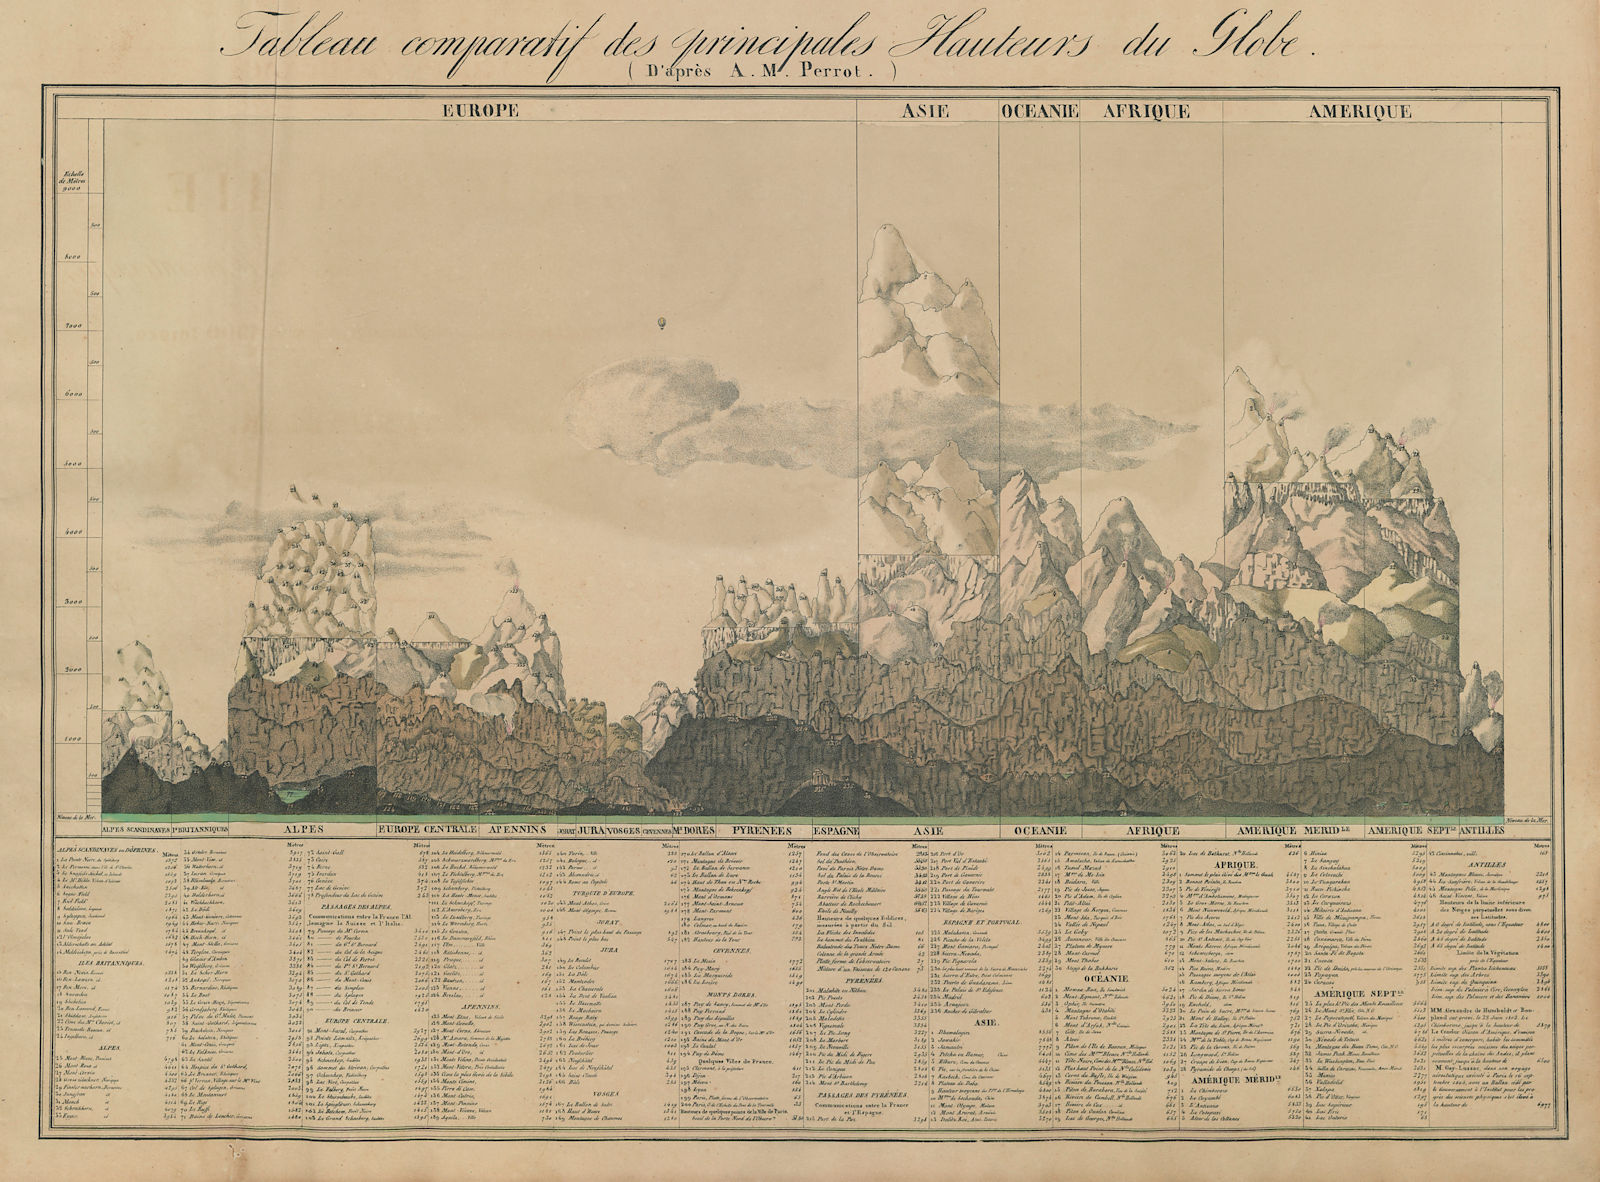 Associate Product Tableau comparatif des principales Hauteurs du Globe. VANDERMAELEN 1827 map